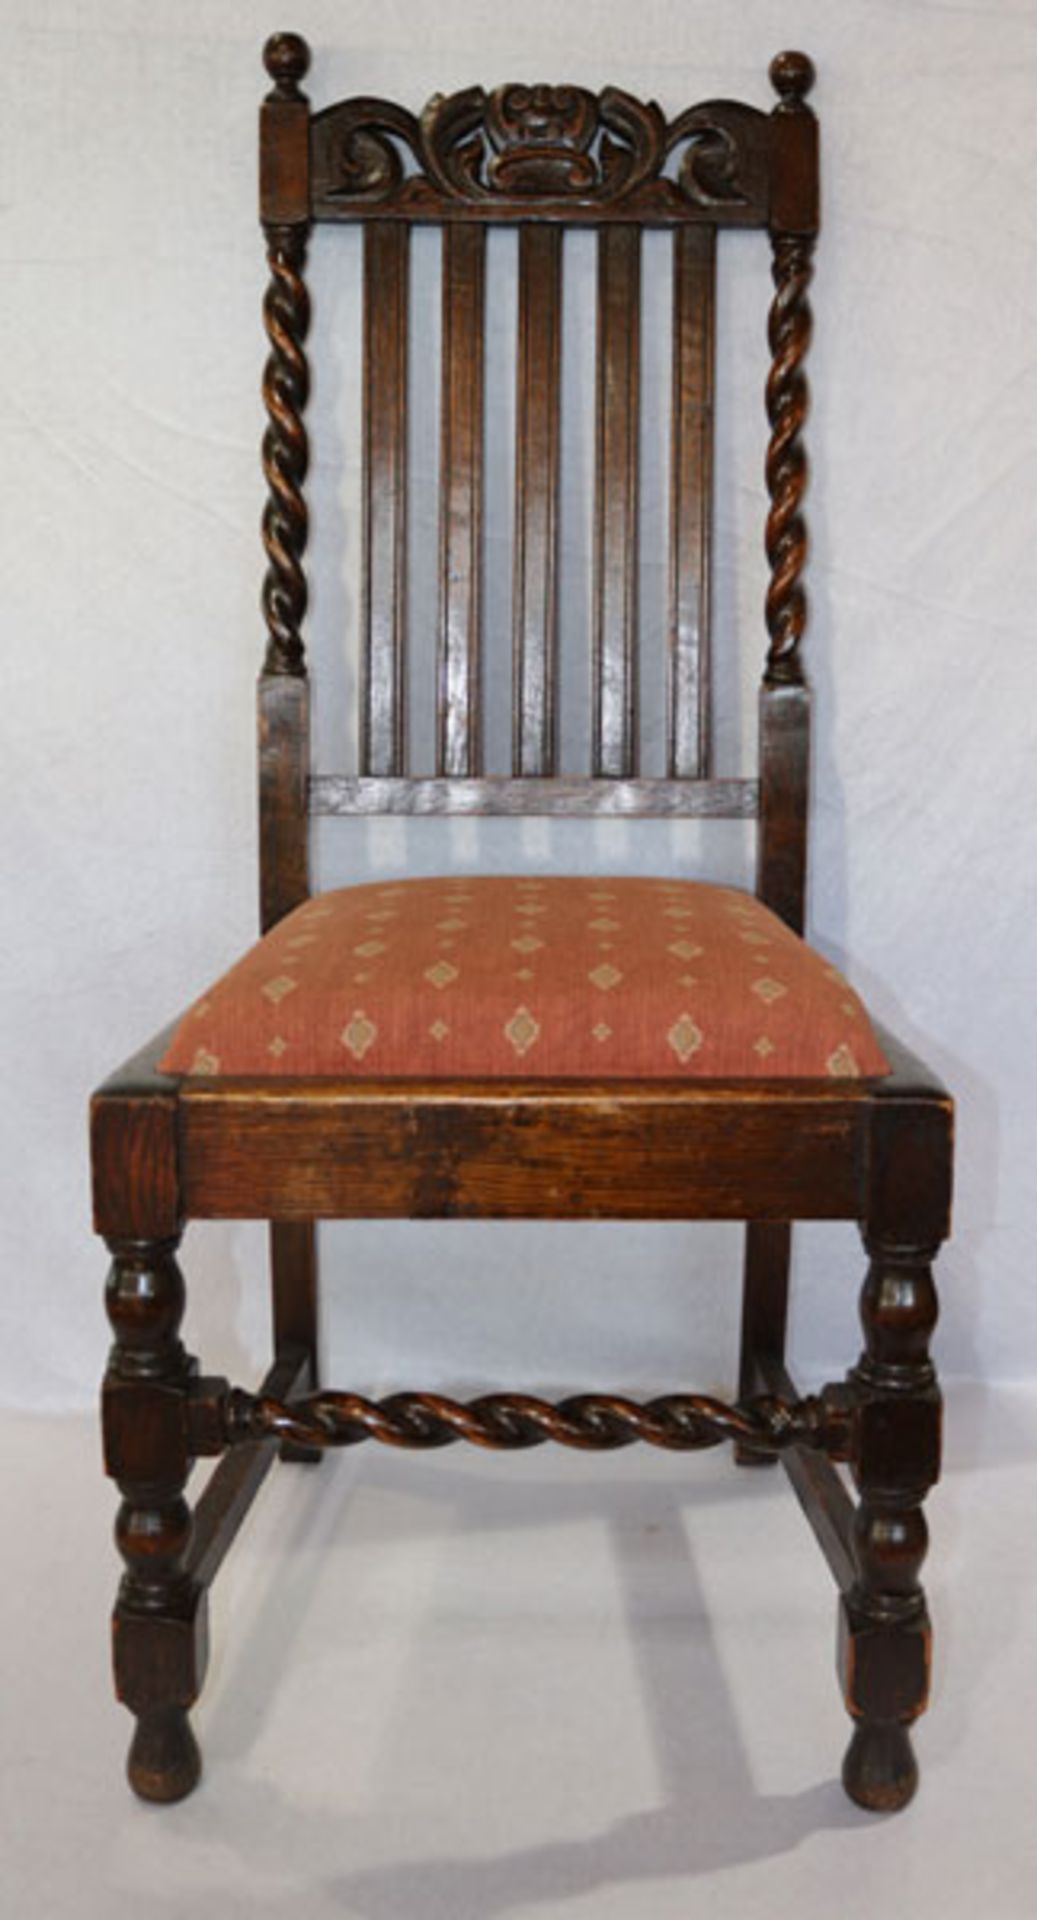 4 englische Stühle, Eiche, gedrechselte Beine, Sitz gepolstert und altrose bezogen, H 105 cm, B 46